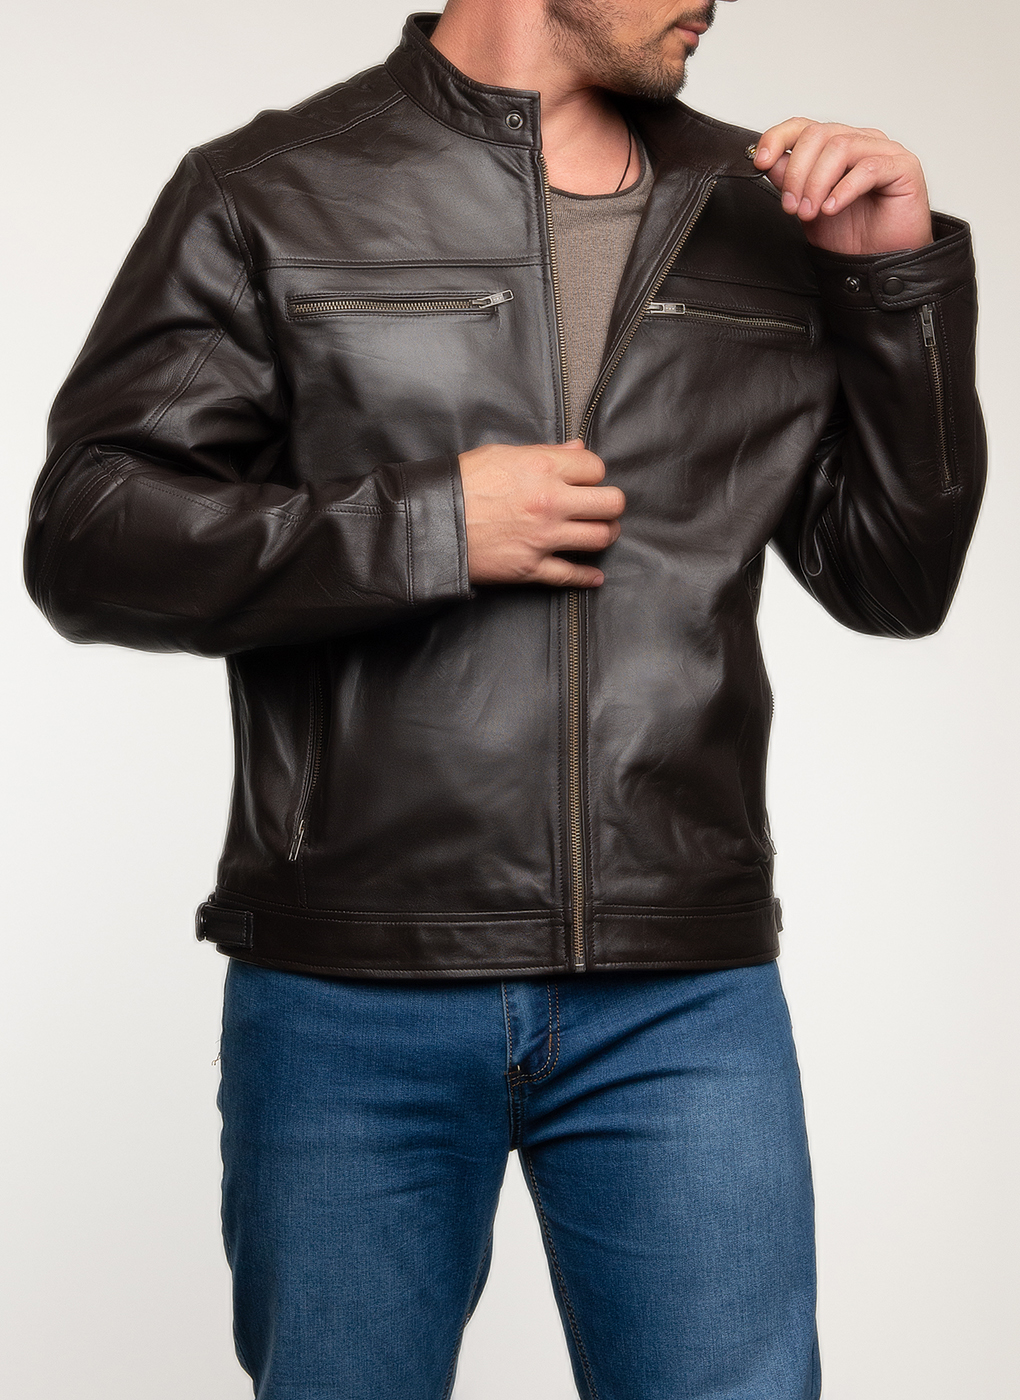 Кожаная куртка мужская Каляев 62651 коричневая 64 RU